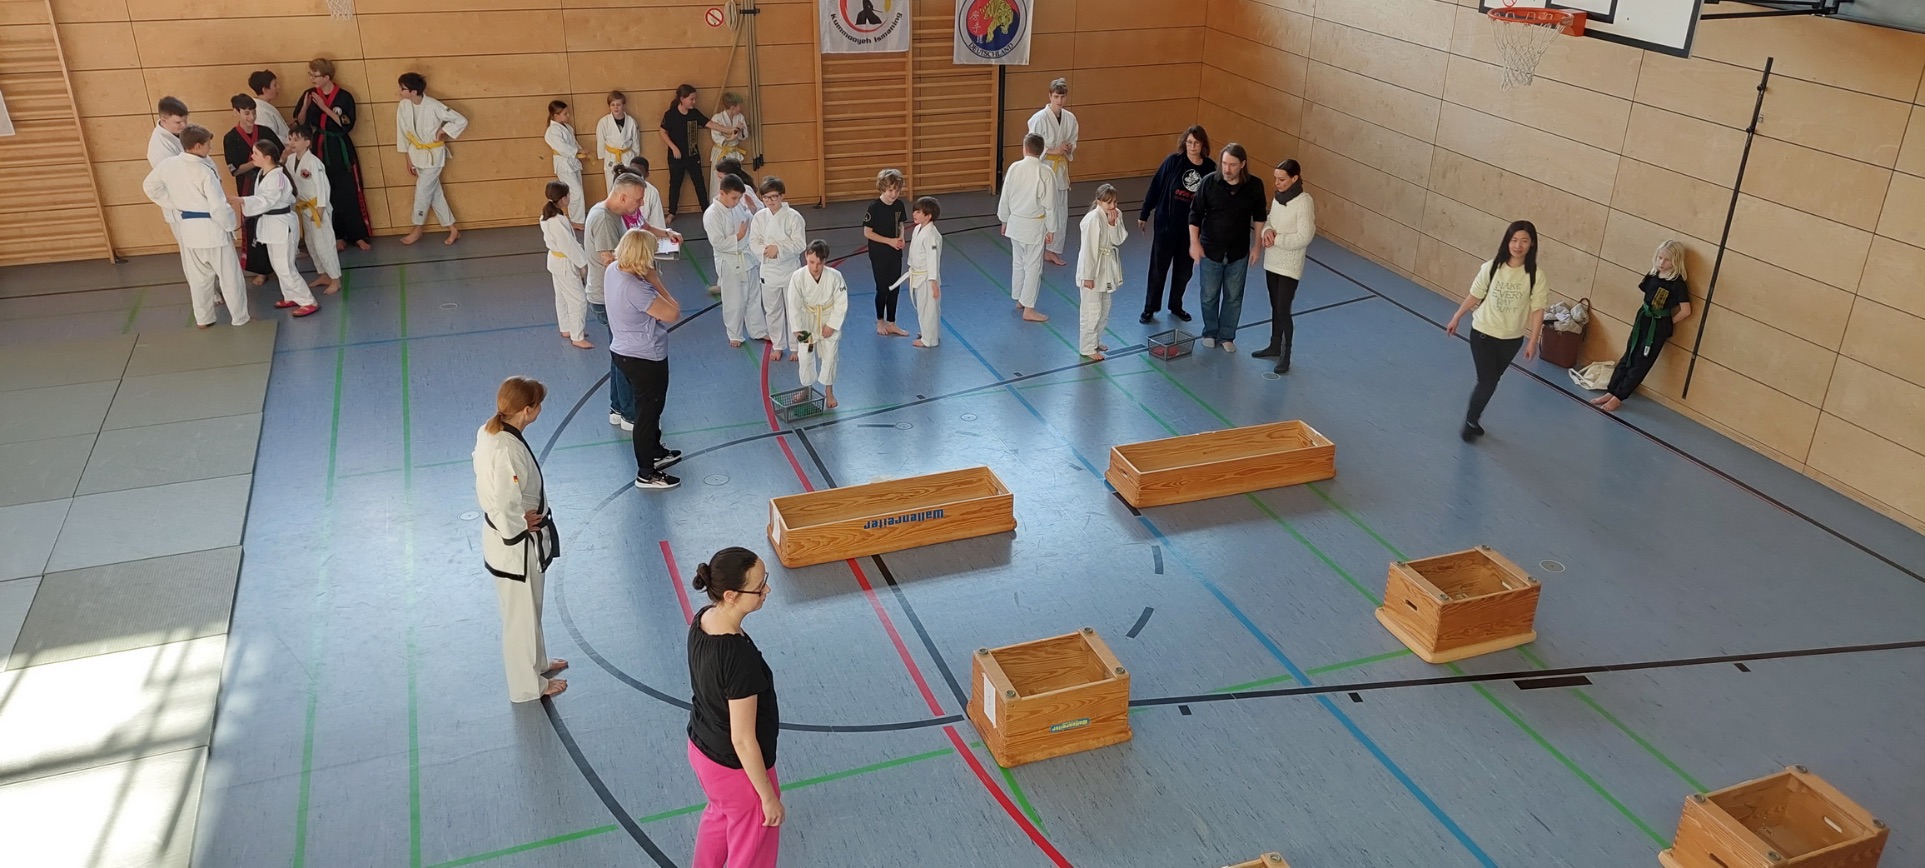 Sportgruppe Judo und Tang Soo Don in weißer Kampfkunst-Kleidung macht in einer Turnhalle Wurfübungen in Turnkästen.